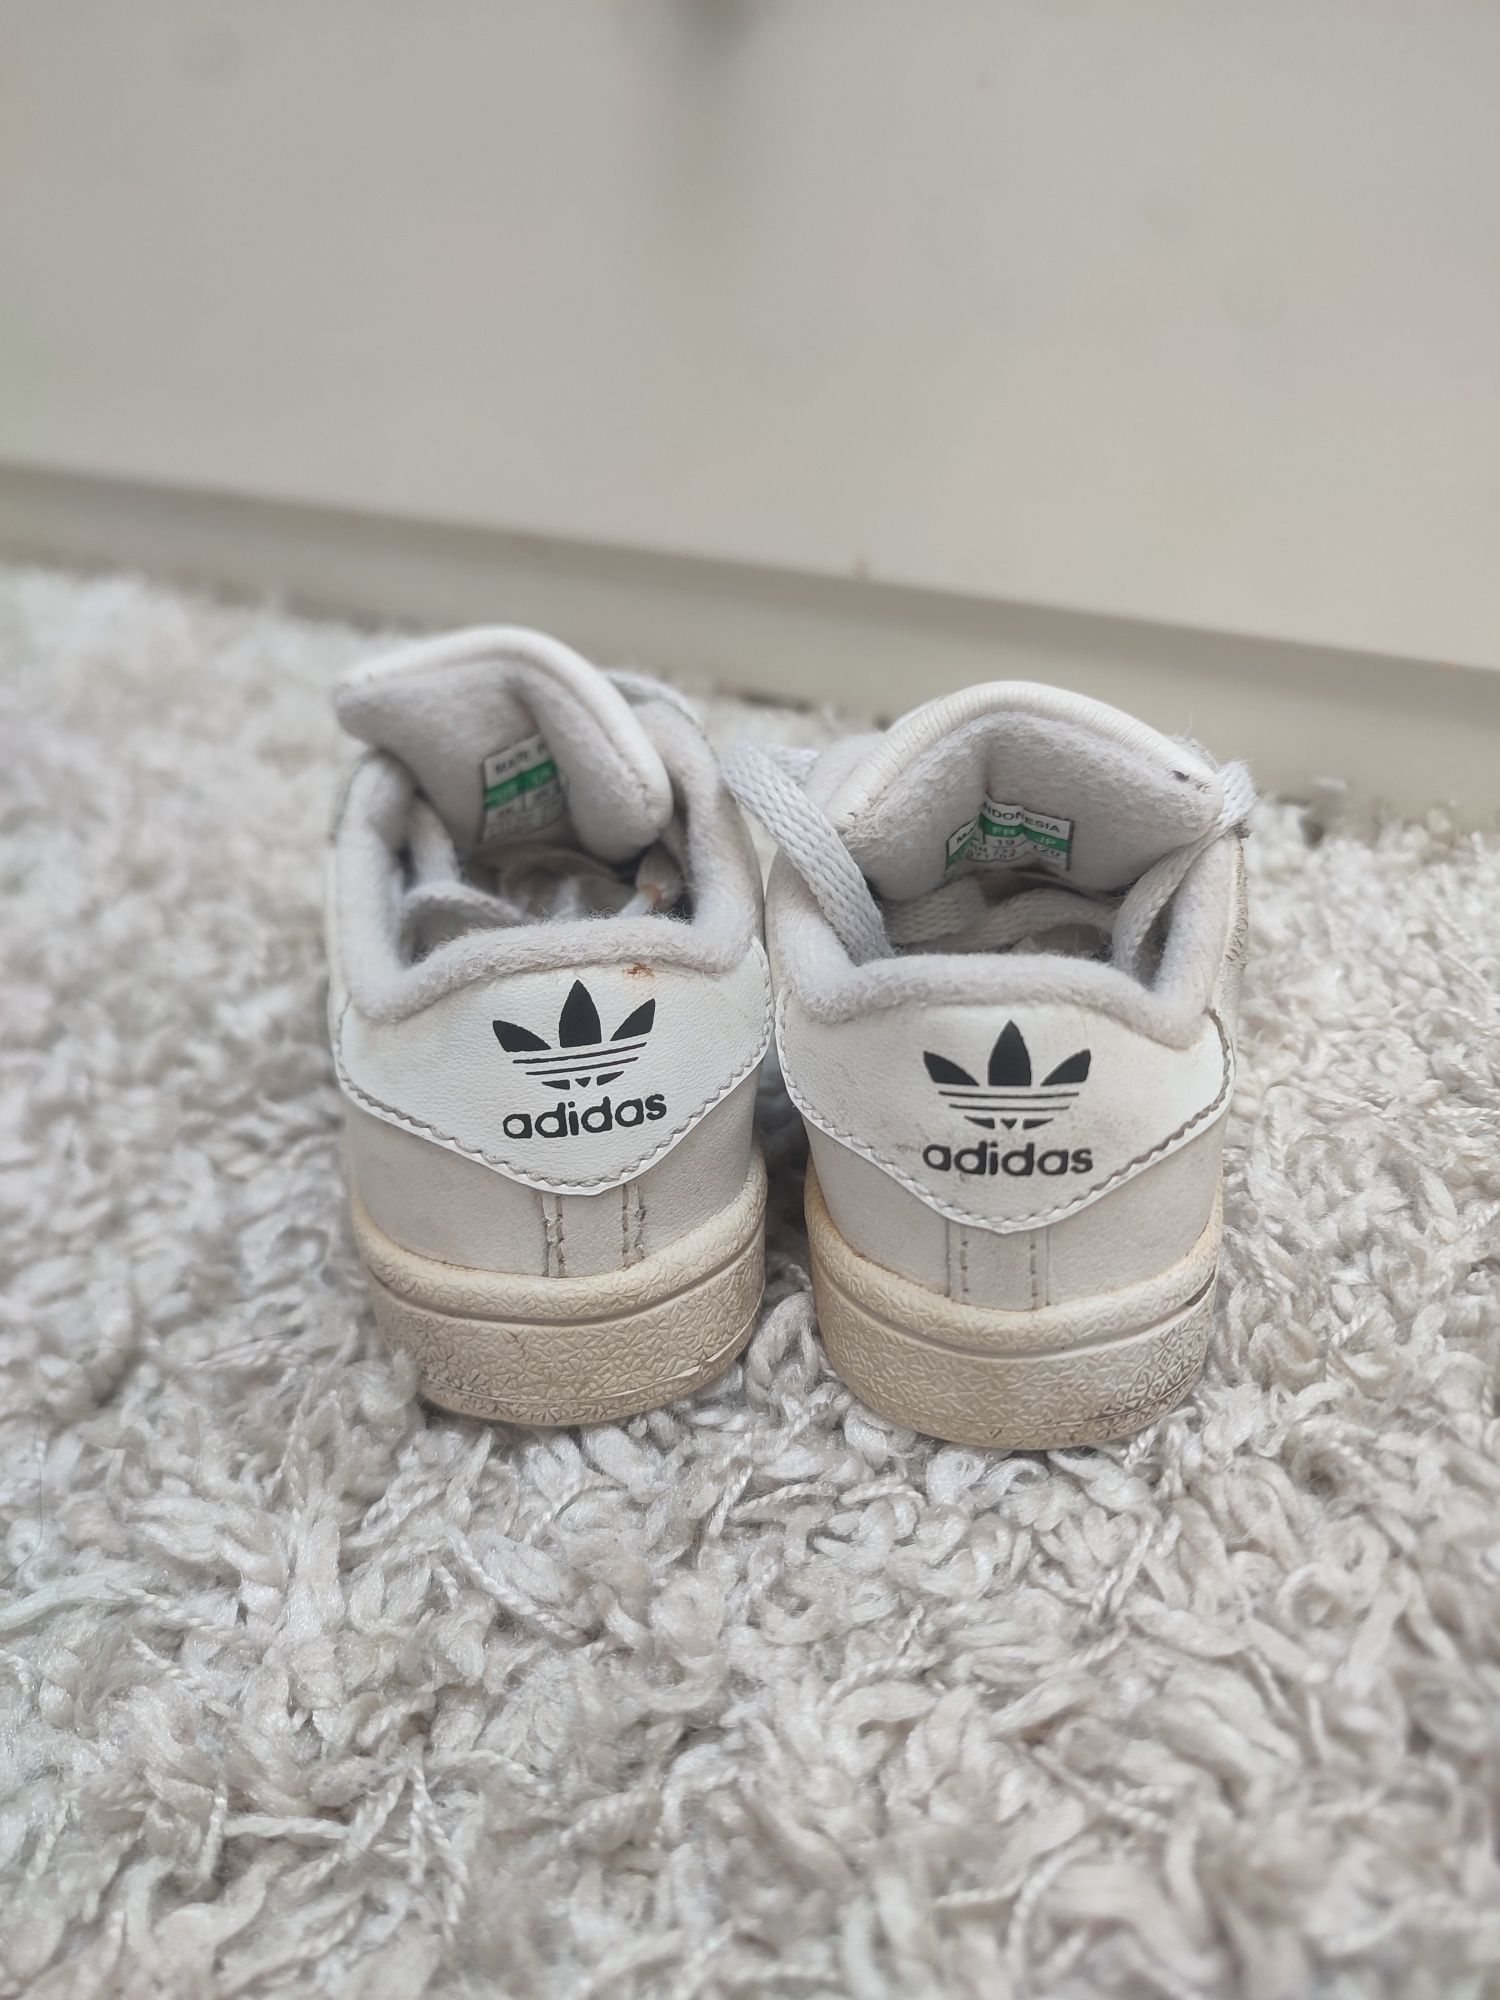 Adidas superstar retro malutkie białe rozmiar 19